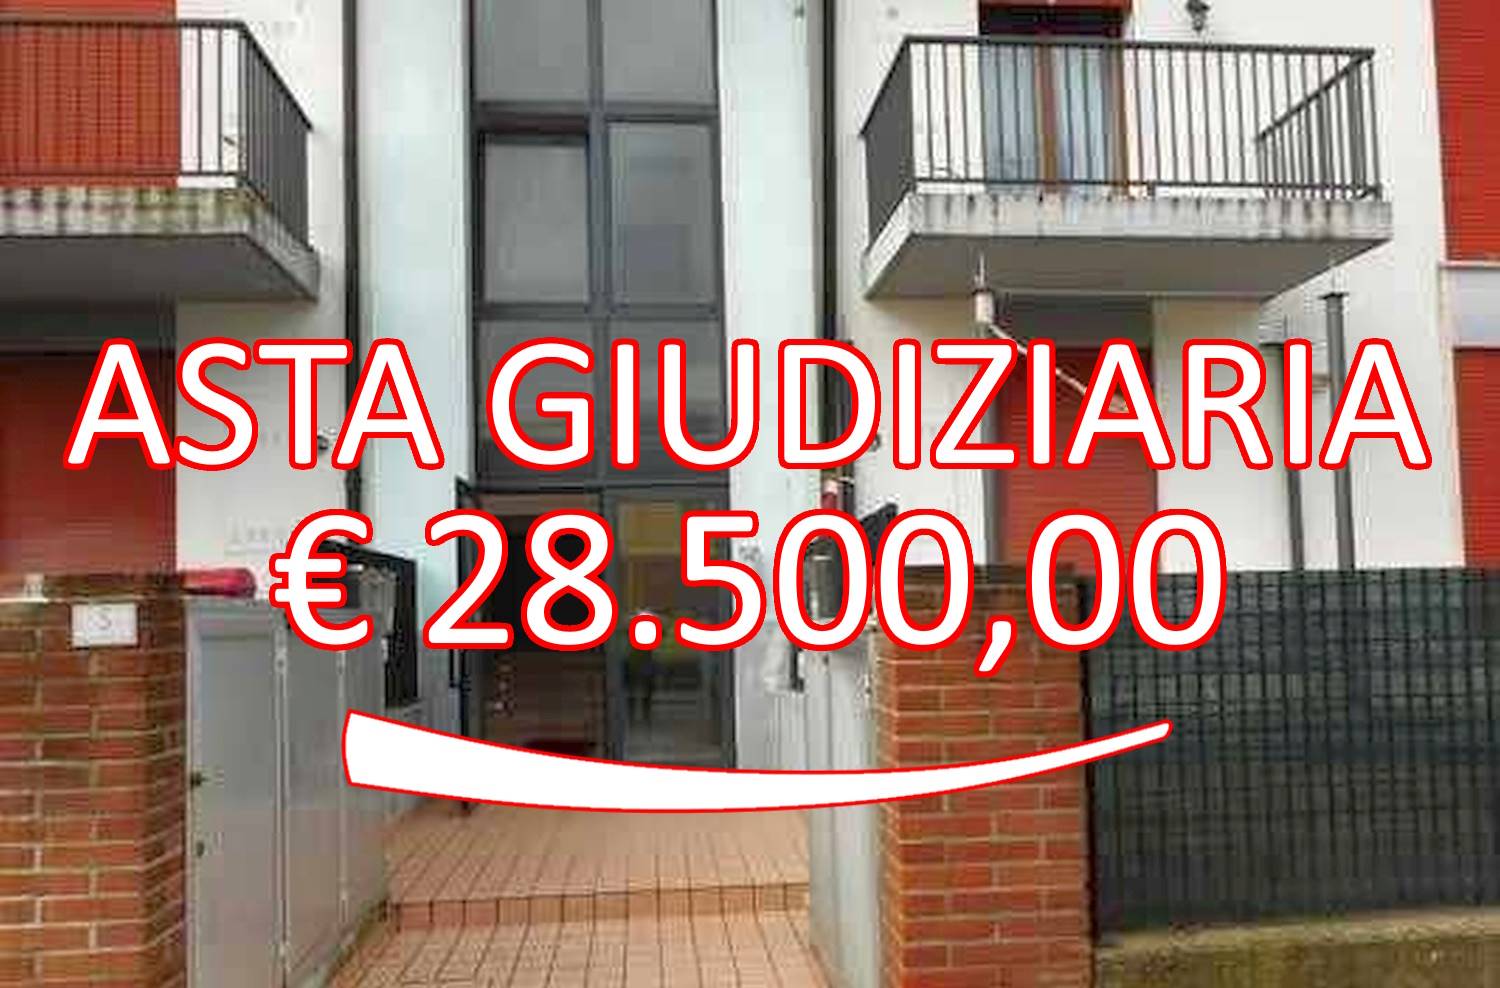 Appartamento in vendita a Grantorto, 3 locali, prezzo € 28.500 | CambioCasa.it